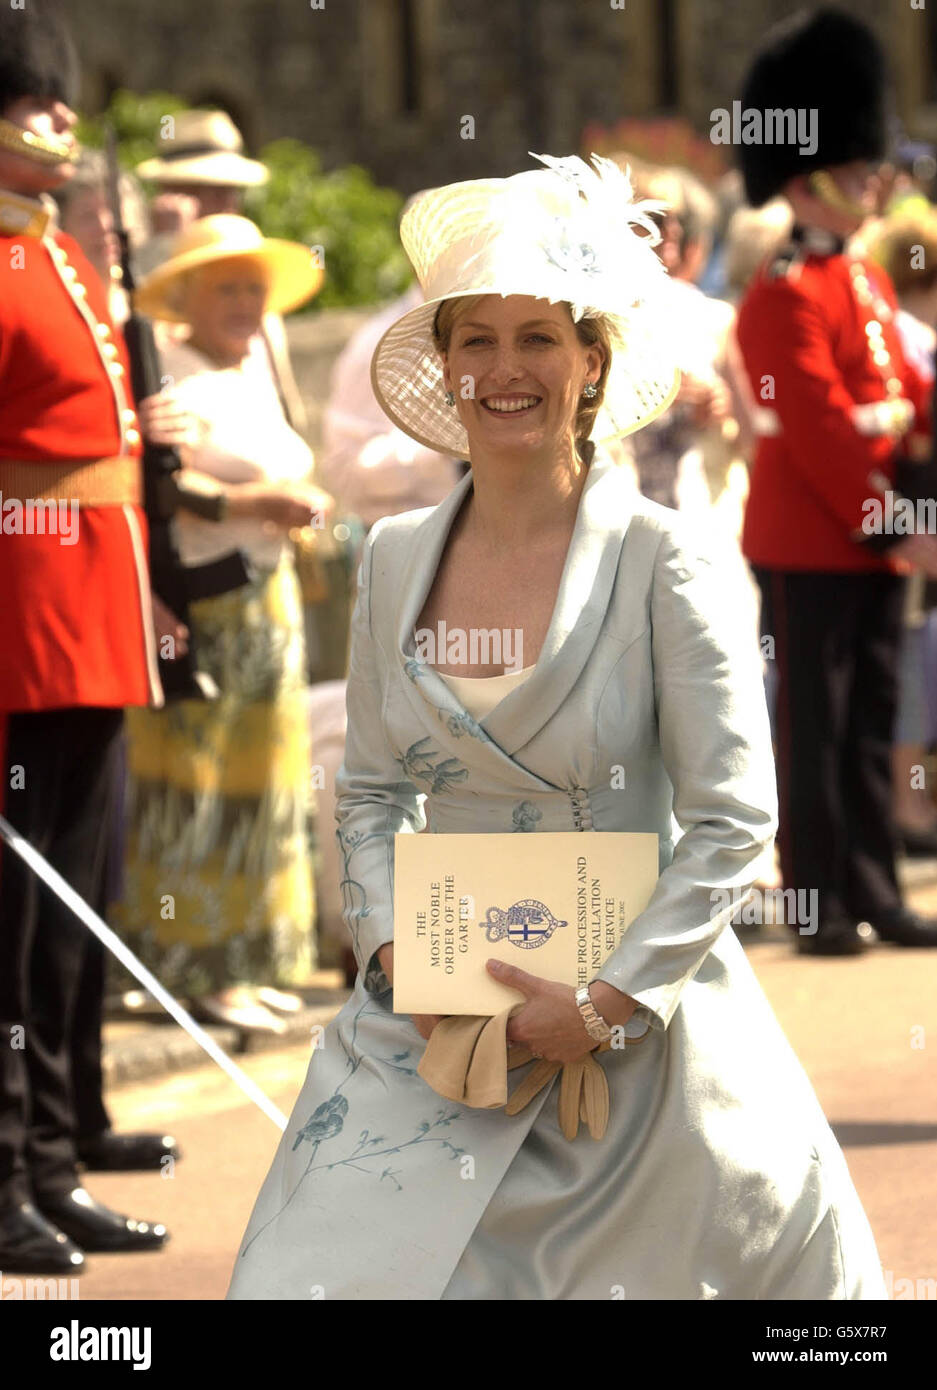 Die Gräfin von Wessex nach dem Garter-Dienst im Schloss Windsor. Rund 8,000 Menschen jubelten, applaudierten und winkten Union Jacks in der heißen Nachmittagssonne. Die jährliche Garter-Prozession ist eine der großartigsten Schauspiele im königlichen Pomp- und Zeremonienkalender. Stockfoto